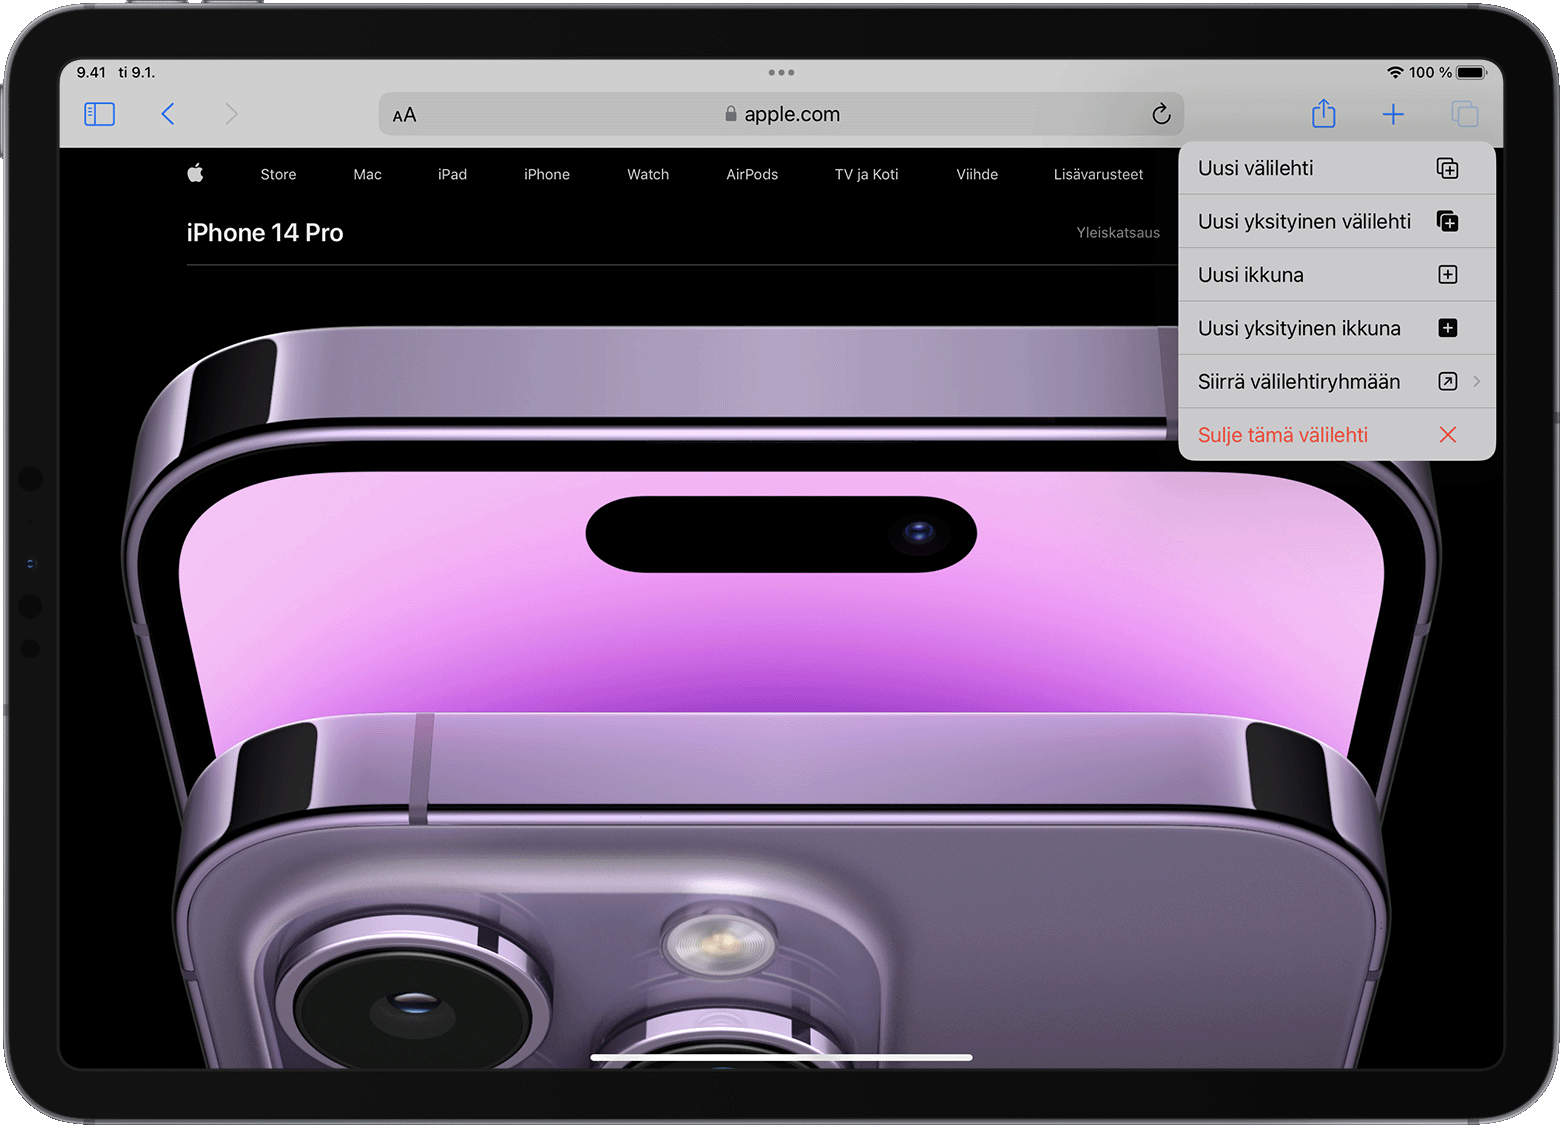 iPad, jossa on avattuna Safari-välilehden asetusvalikko